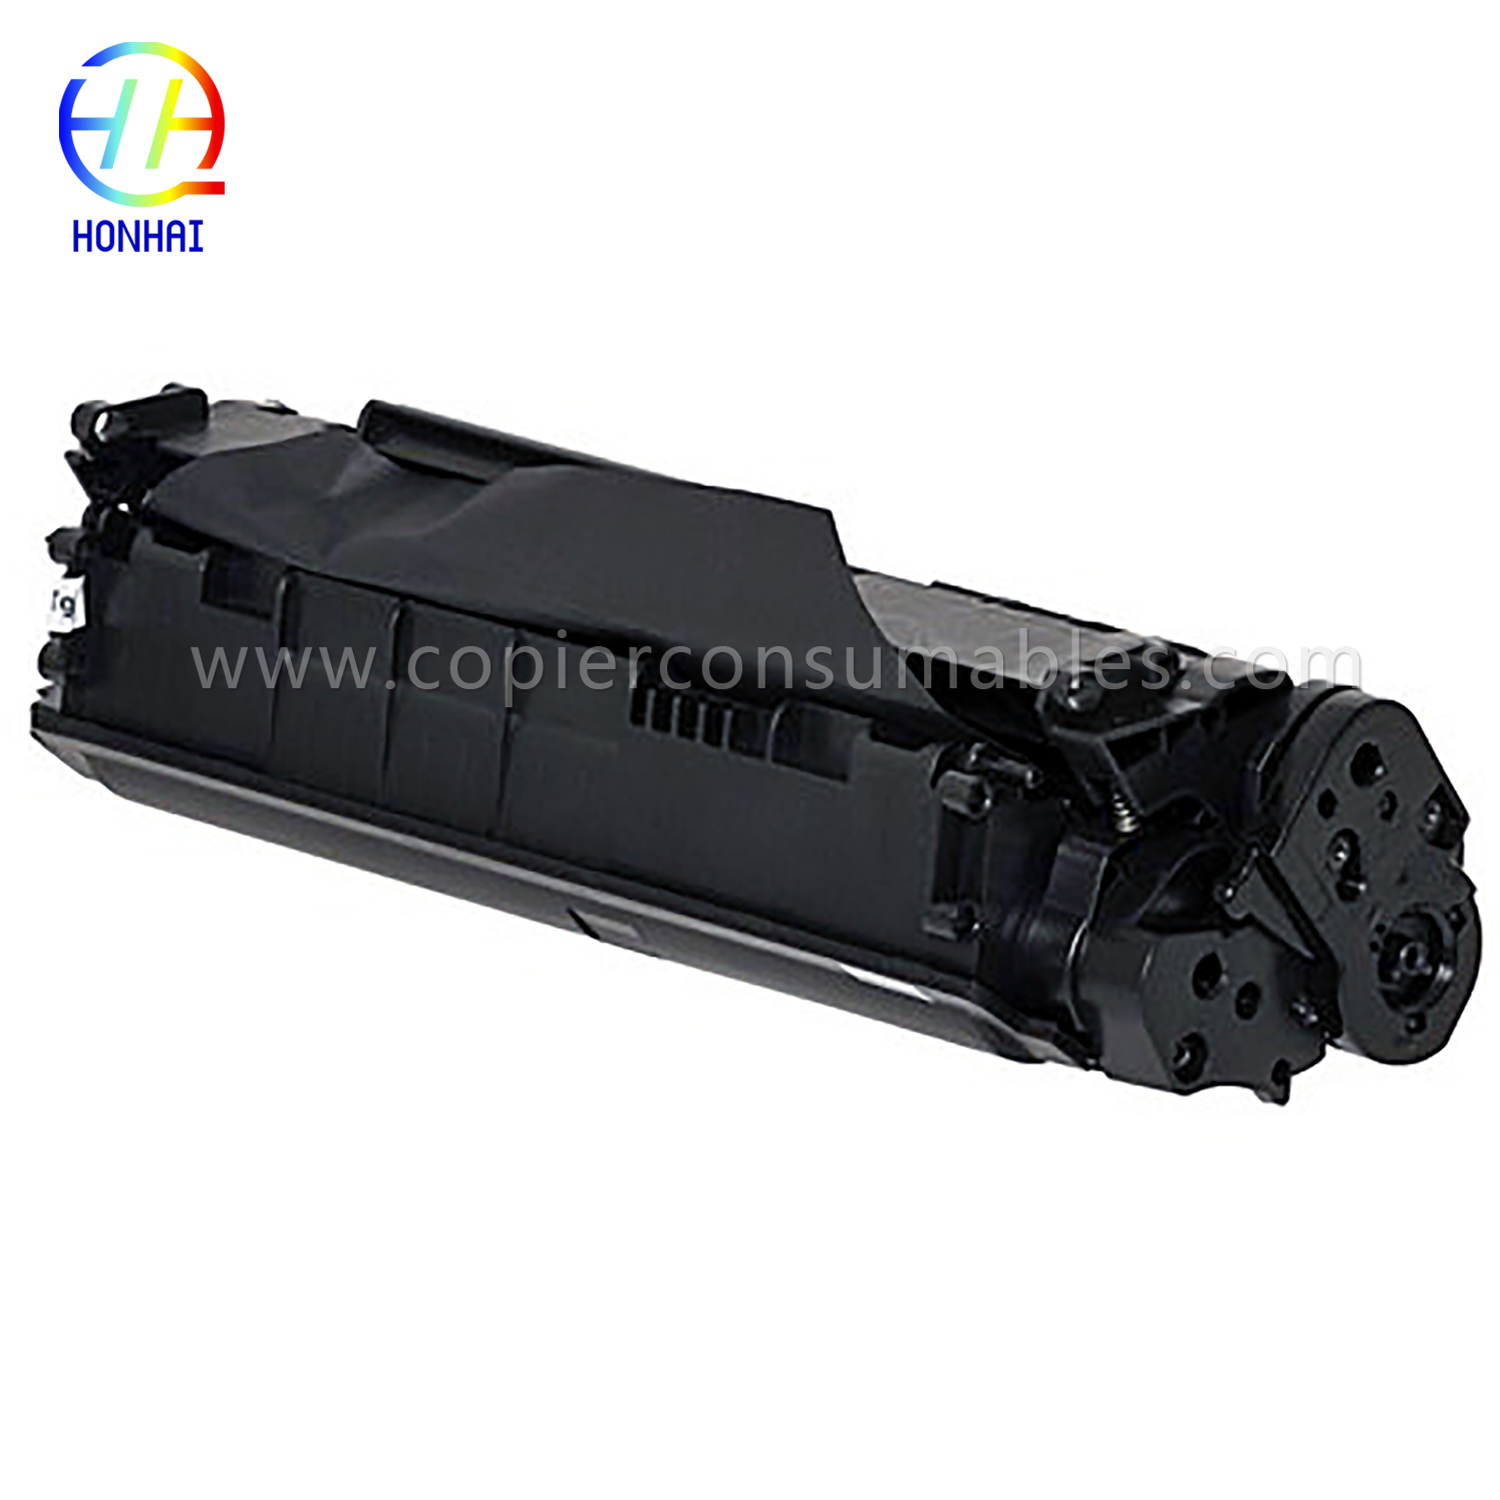 Black Toner Cartridge HP LaserJet 1010 1012 1015 1018 1020 3015 3020 3030 3050 3052 3055 M1005MFP M1319f (Q2612A) 13.9x45.2x6